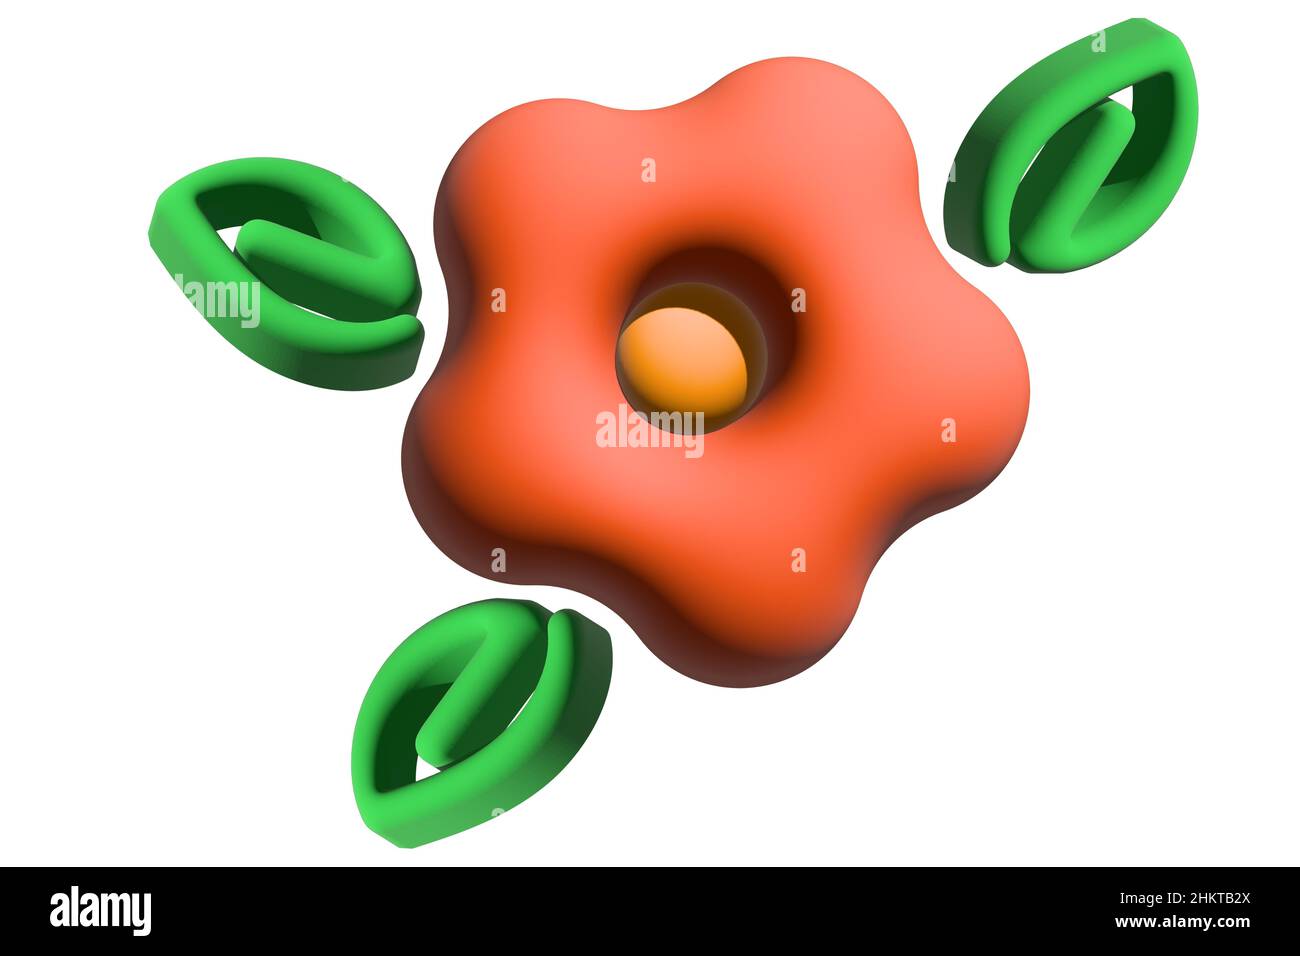 3D illustrazione. Immagine astratta di un fiore di colore arancione in stile cartoon minimalista. Grafica 3D. Isolare. Icona. Immagine semplice per il design e i social network. Foto Stock